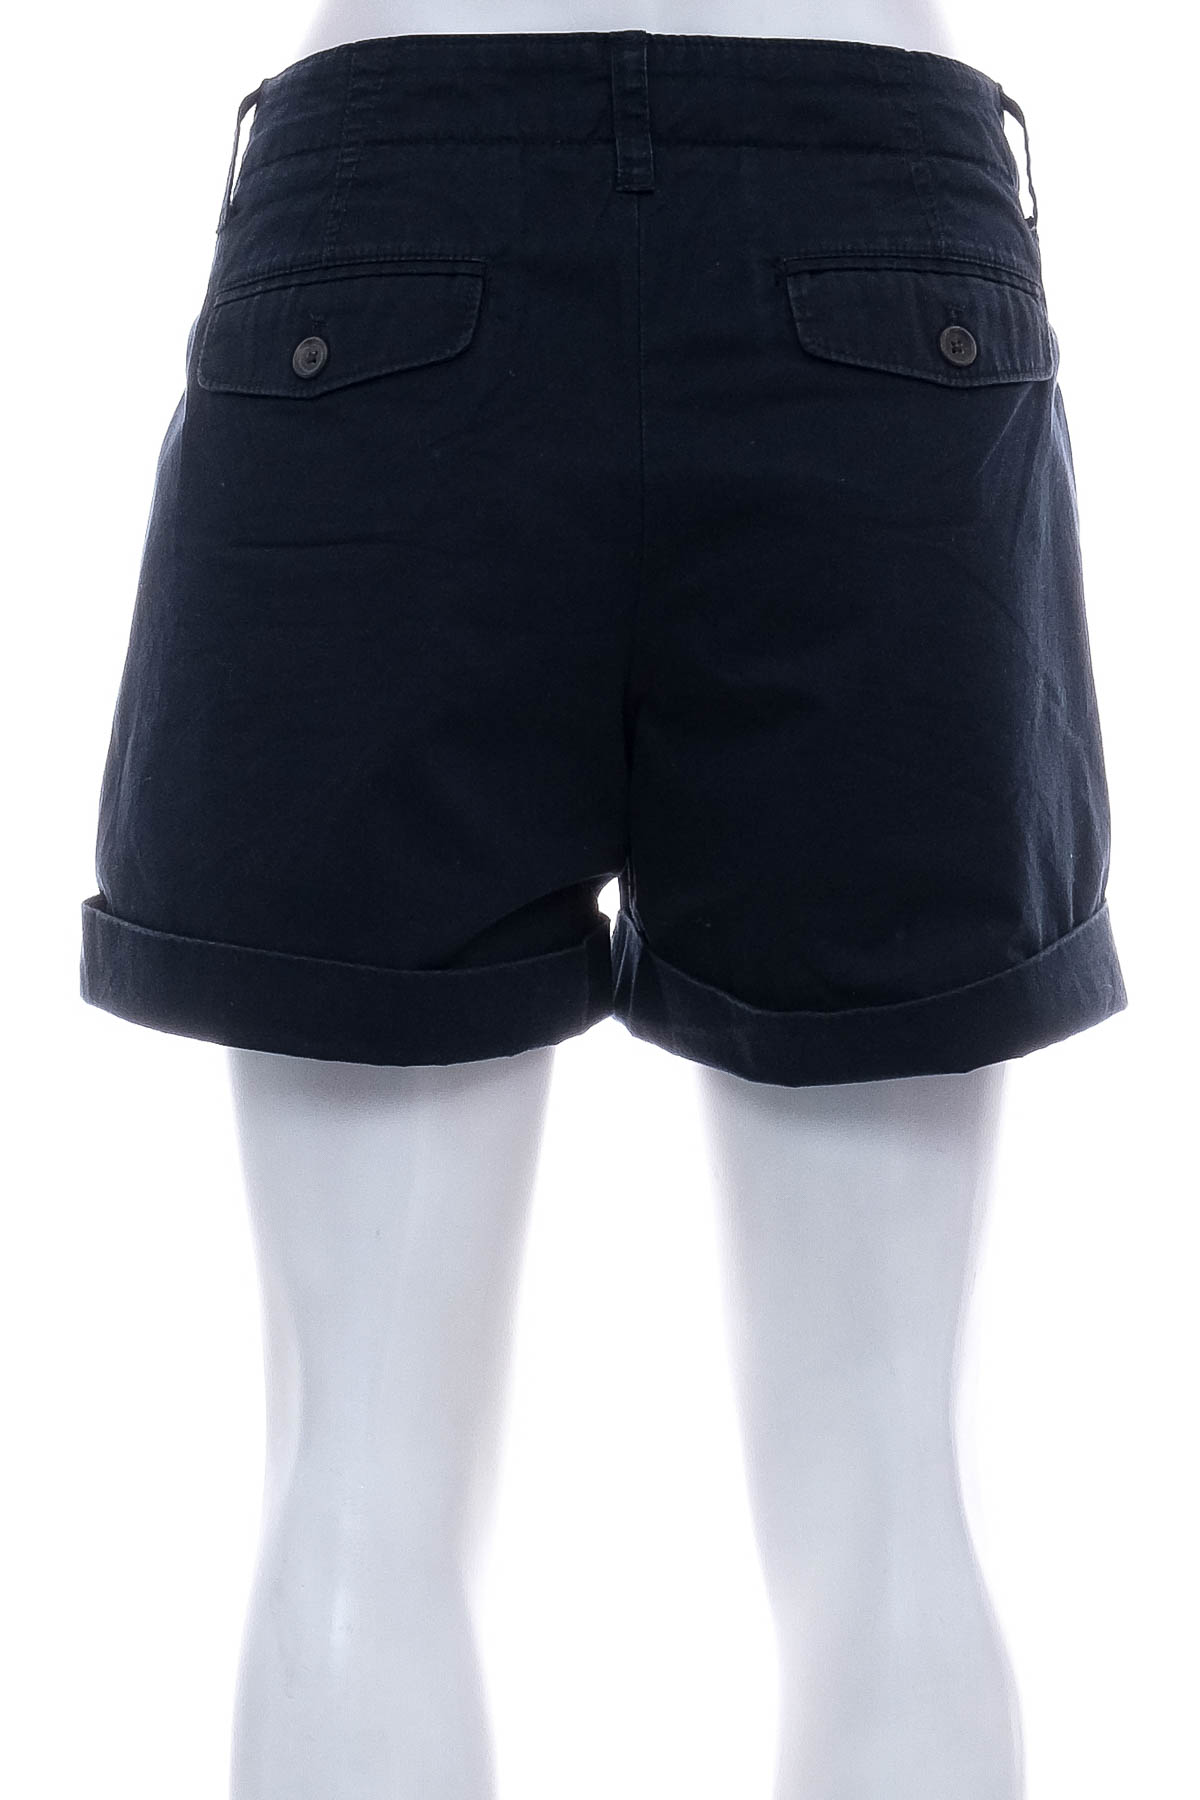 Female shorts - GAP - 1